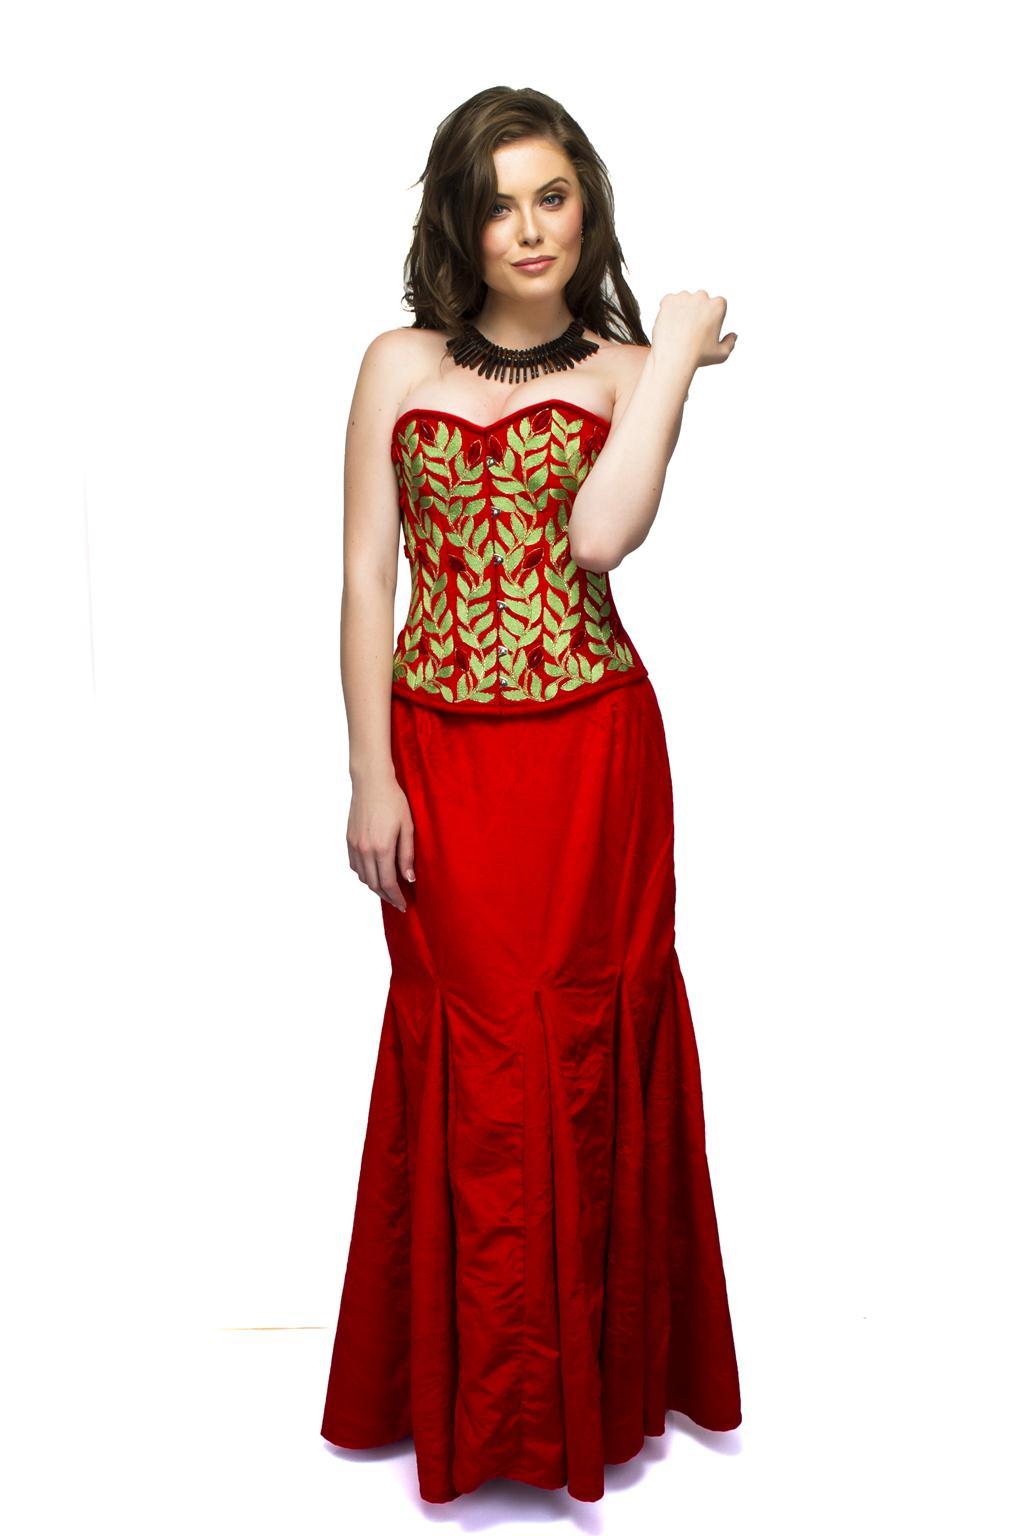 red velvet corset dress